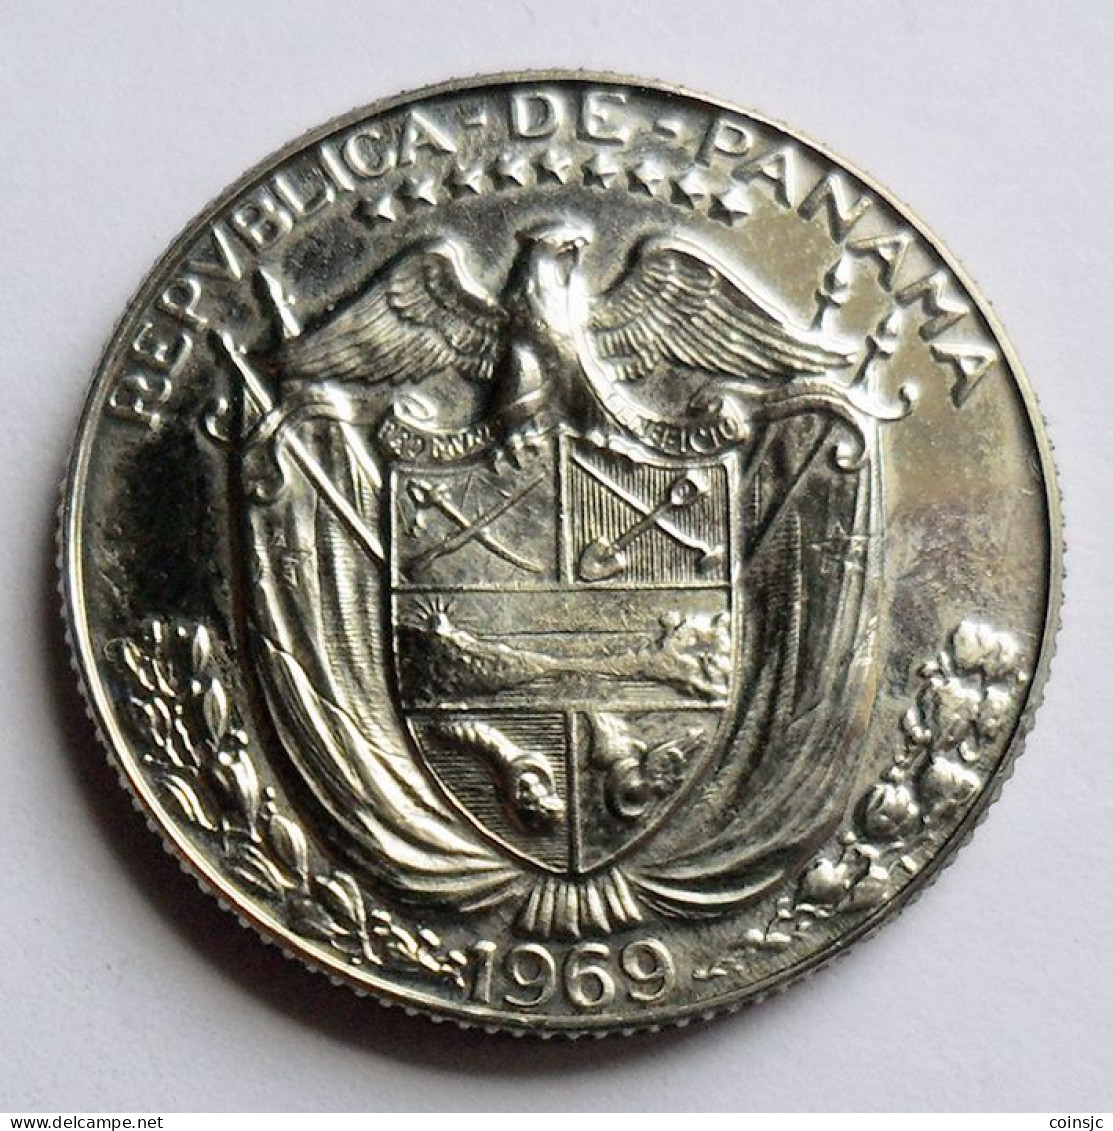 PANAMA  - 1/4 BALBOA  - 1969 - UNC - Mintage: 14.000 - Panama